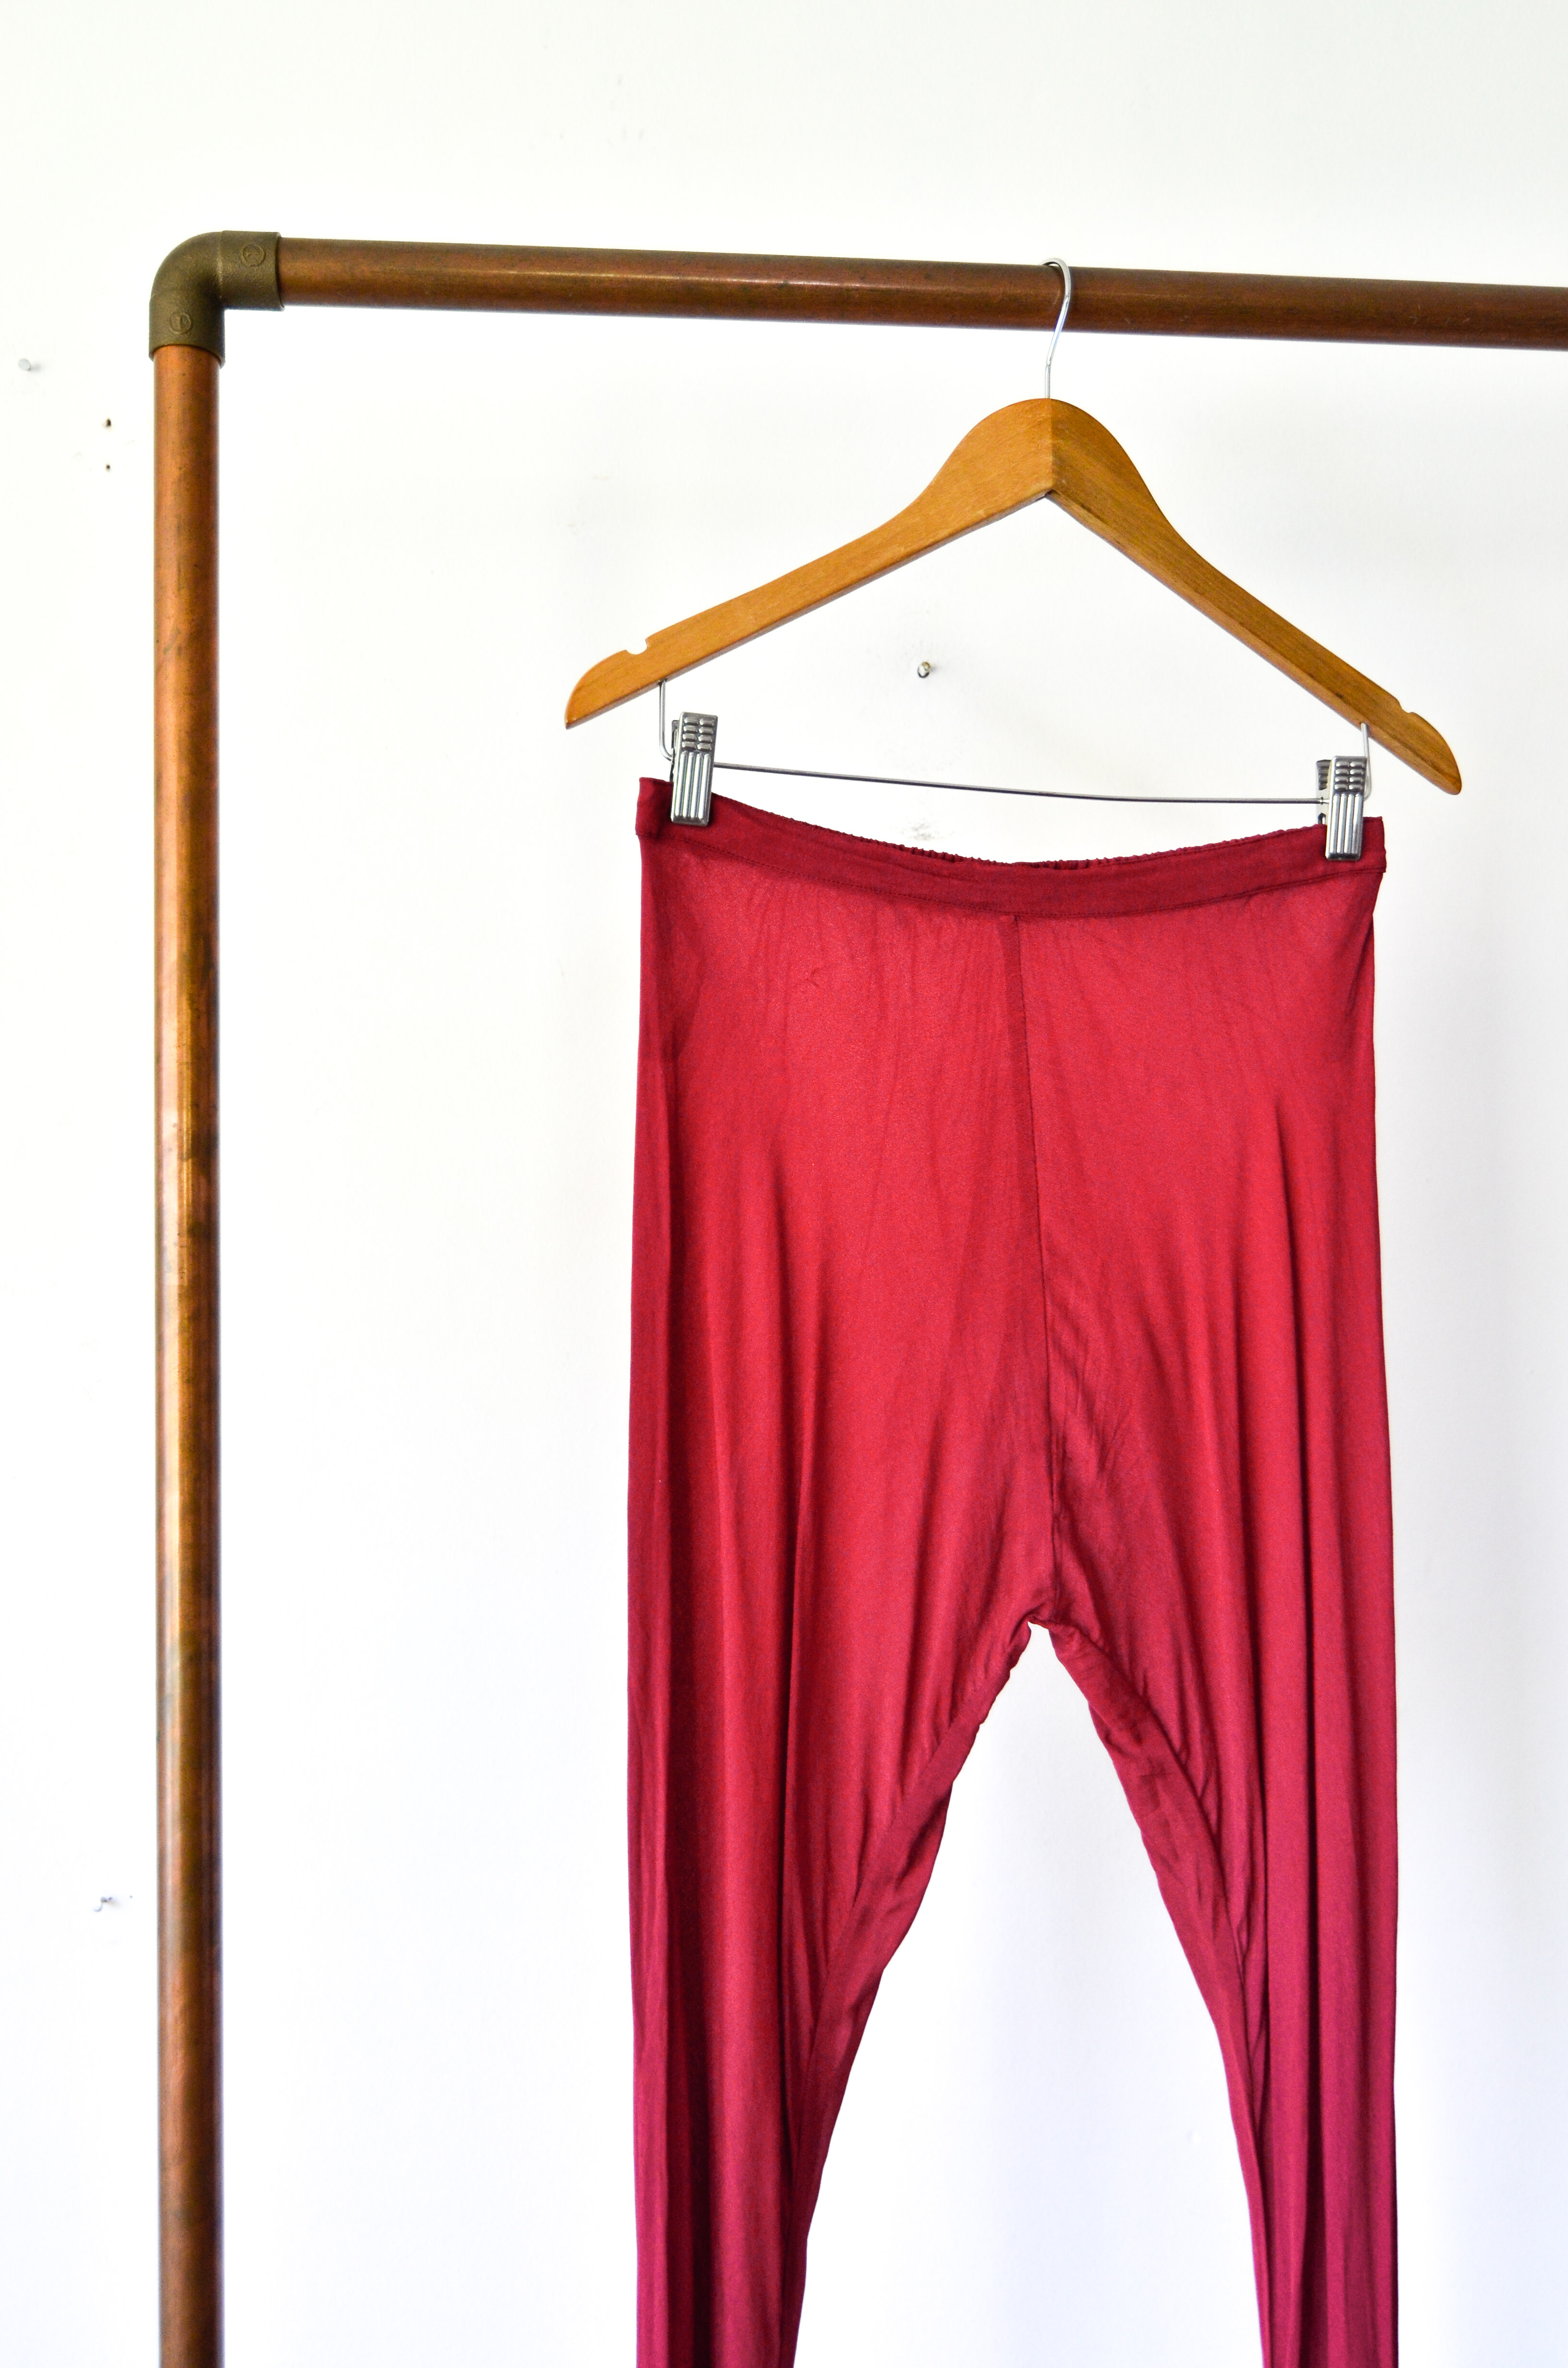 Pantalón rojo transparencia vintage